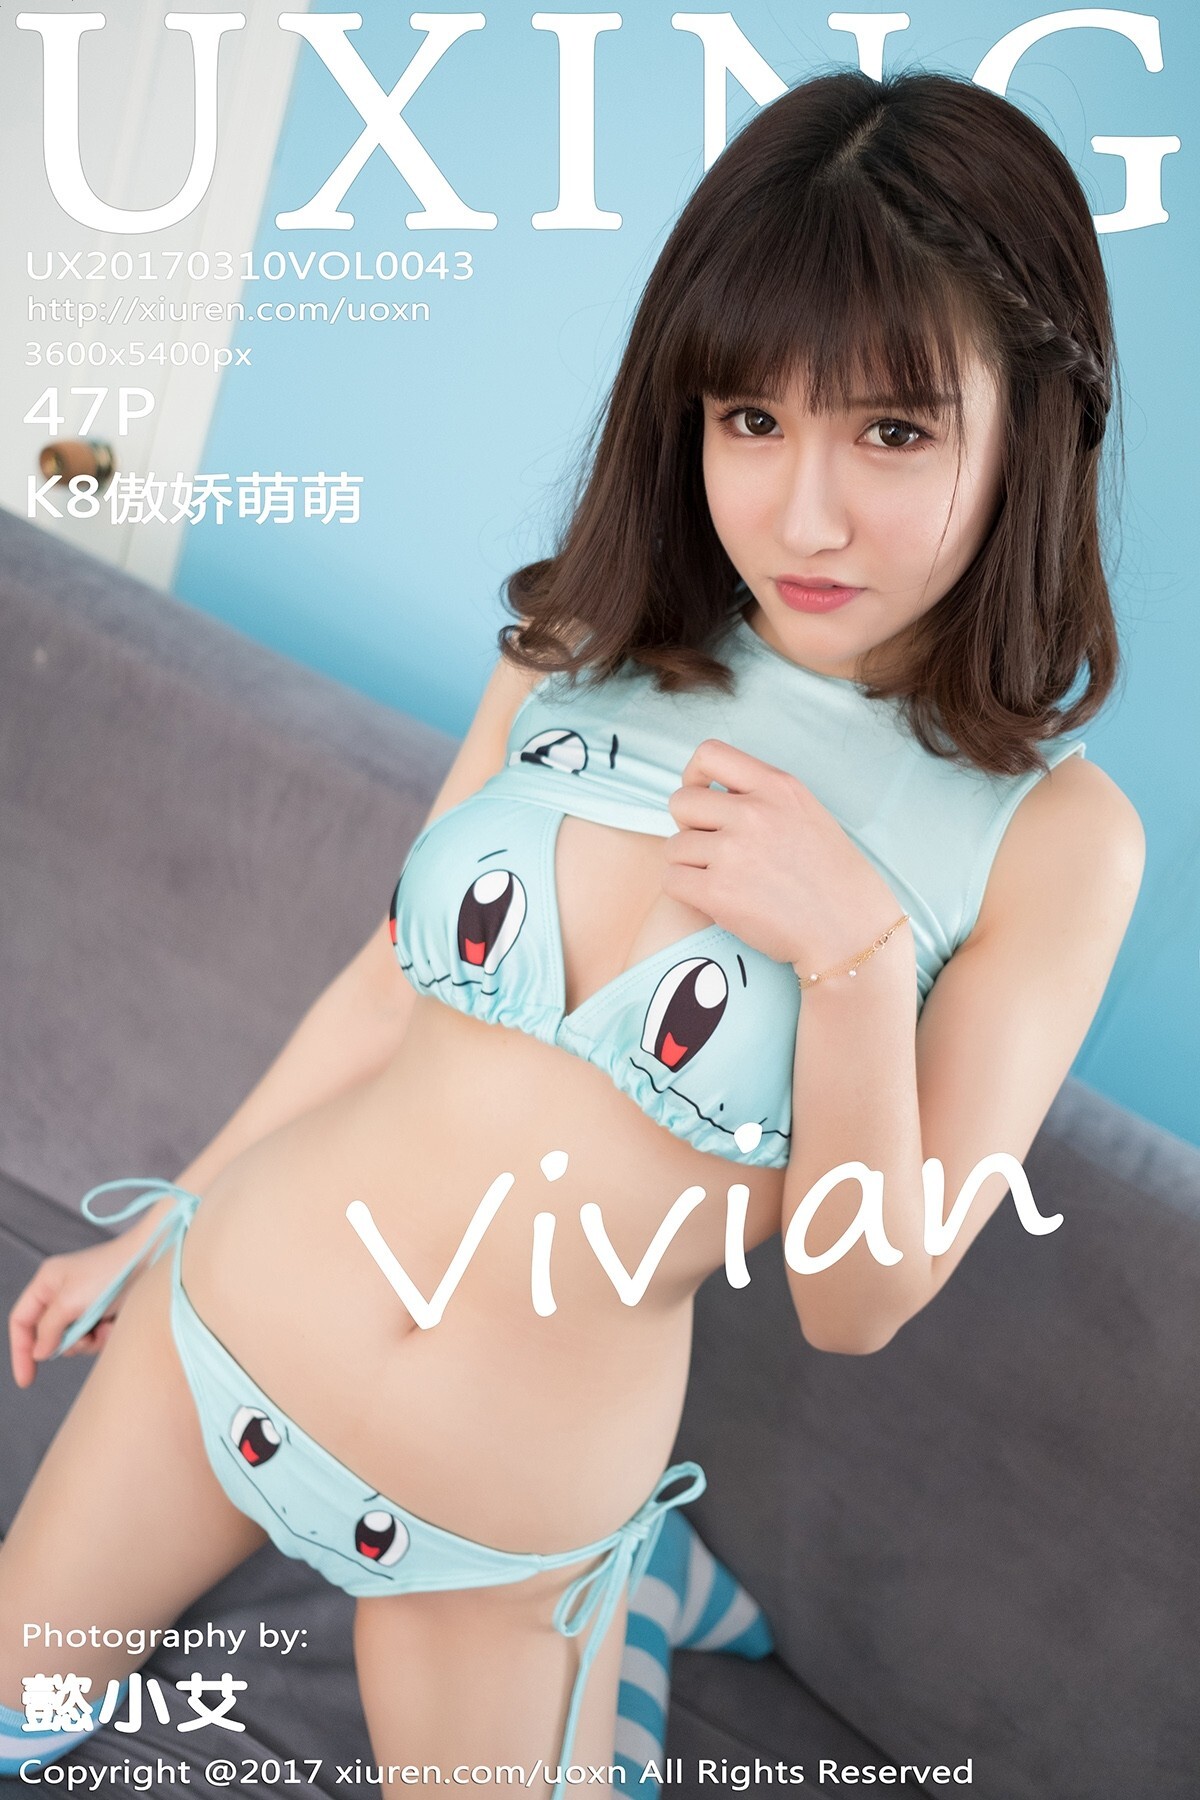 [uxing] youxingguan March 10, 2017 vol.043 K8 Vivian